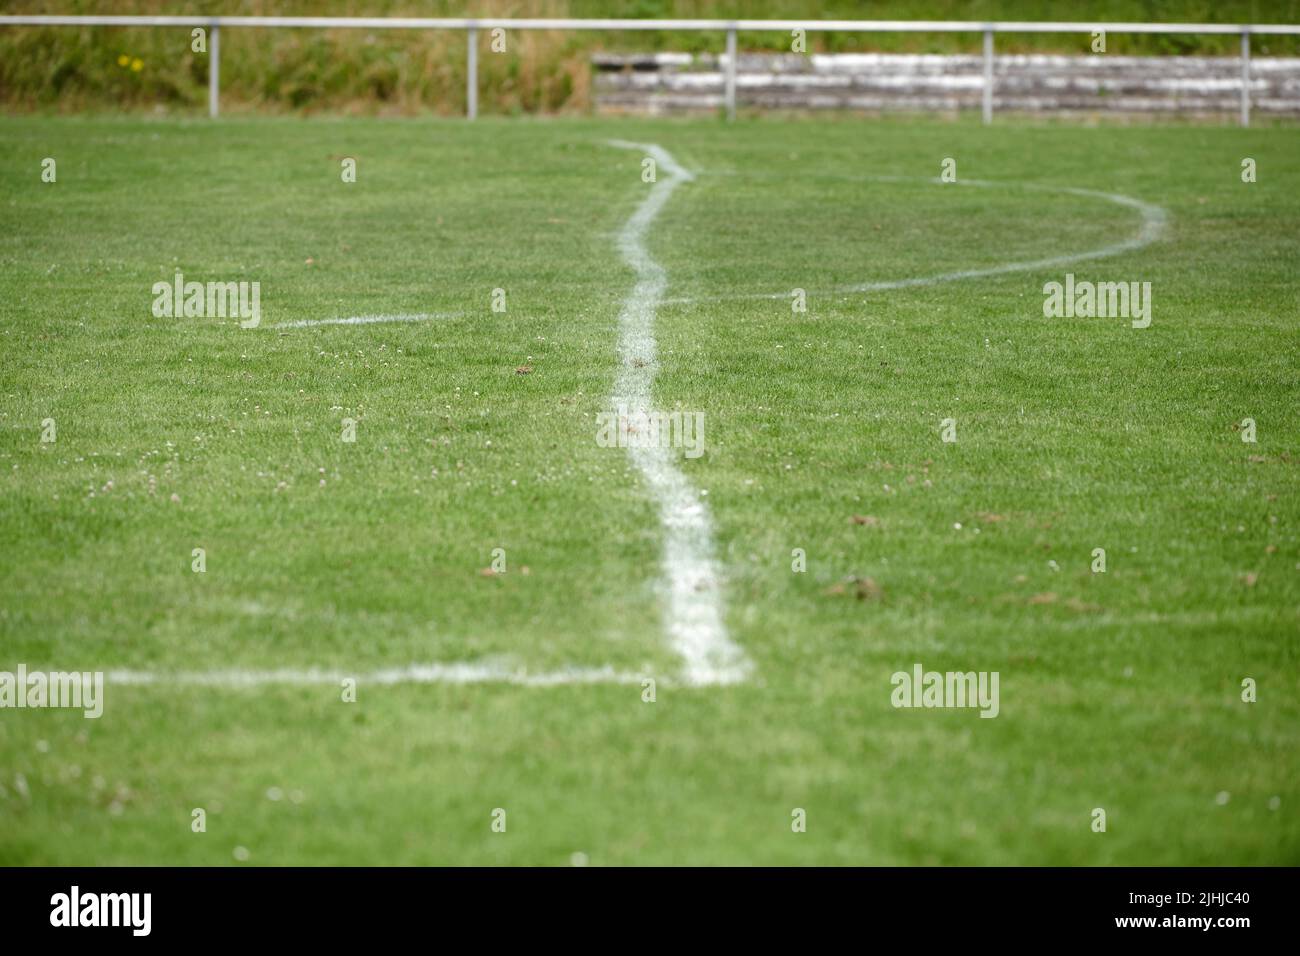 Eine krumm gezogenen Linie eines 16 Meter Raums auf einem Amateurfussballplatz. Eine weisse krumme Linie auf einem gruenen natuerlichen Rasen. Im Hint Stock Photo